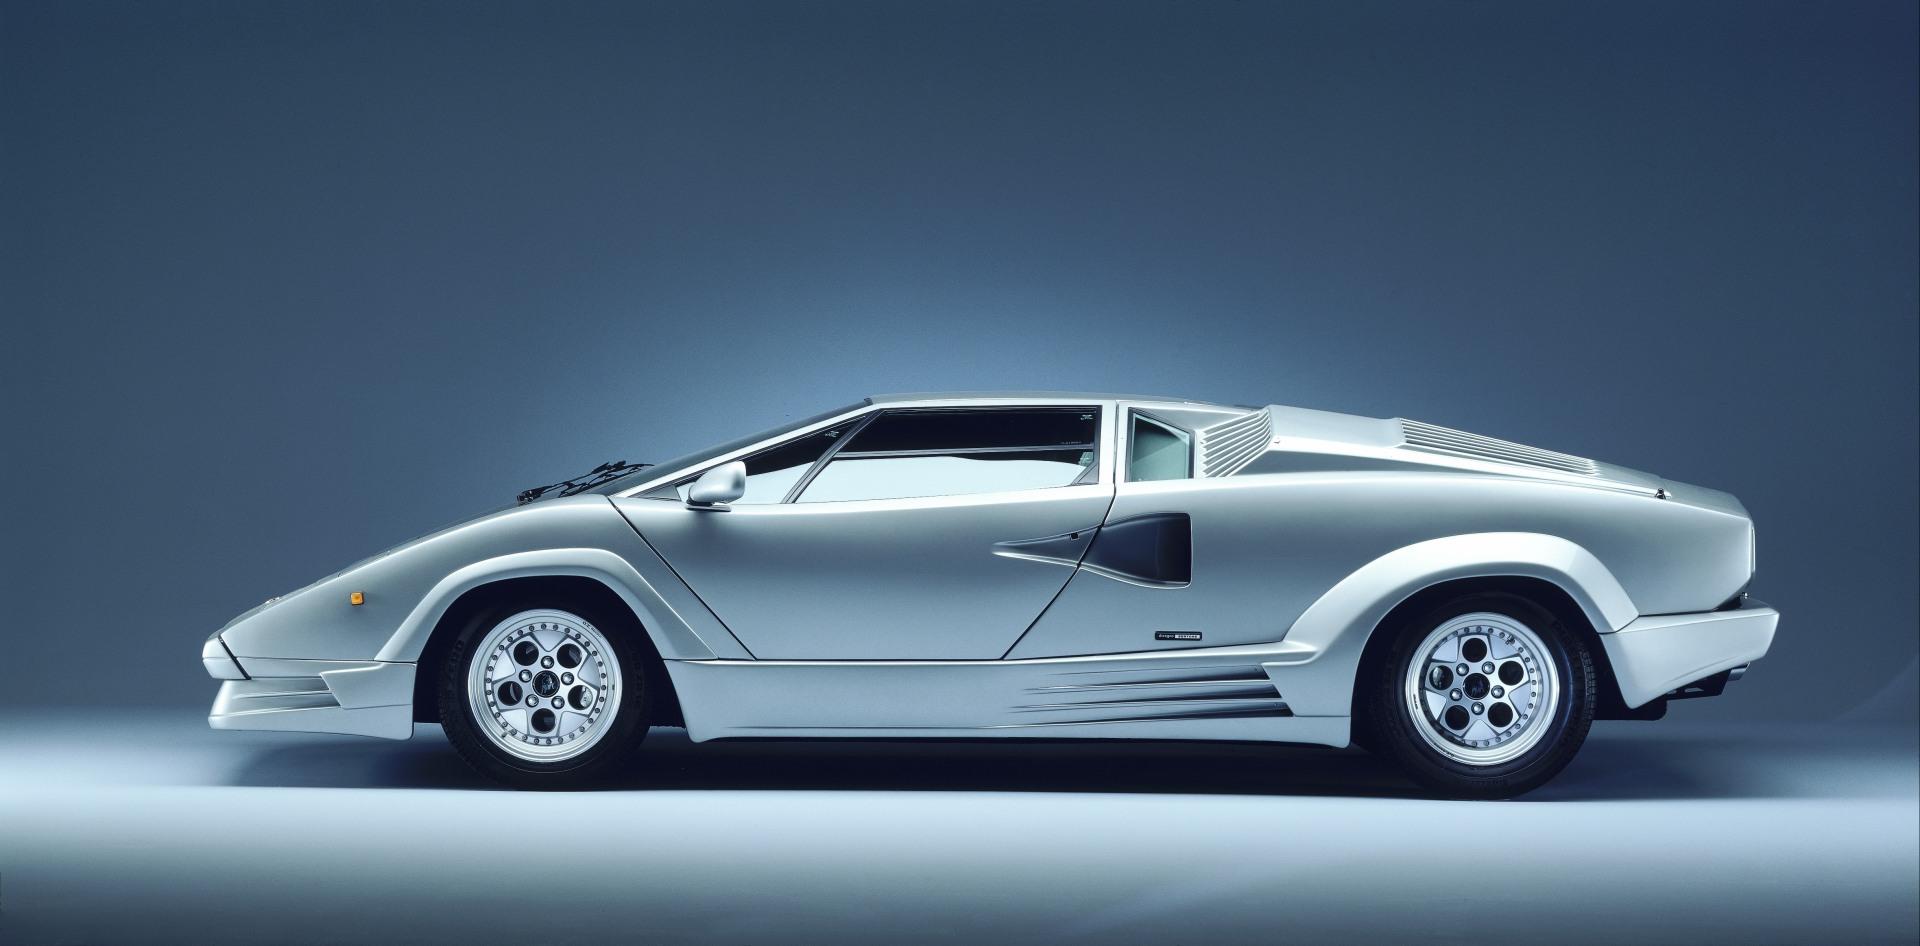 Lamborghini Countach 25th Anniversary Wallpaper [HD]